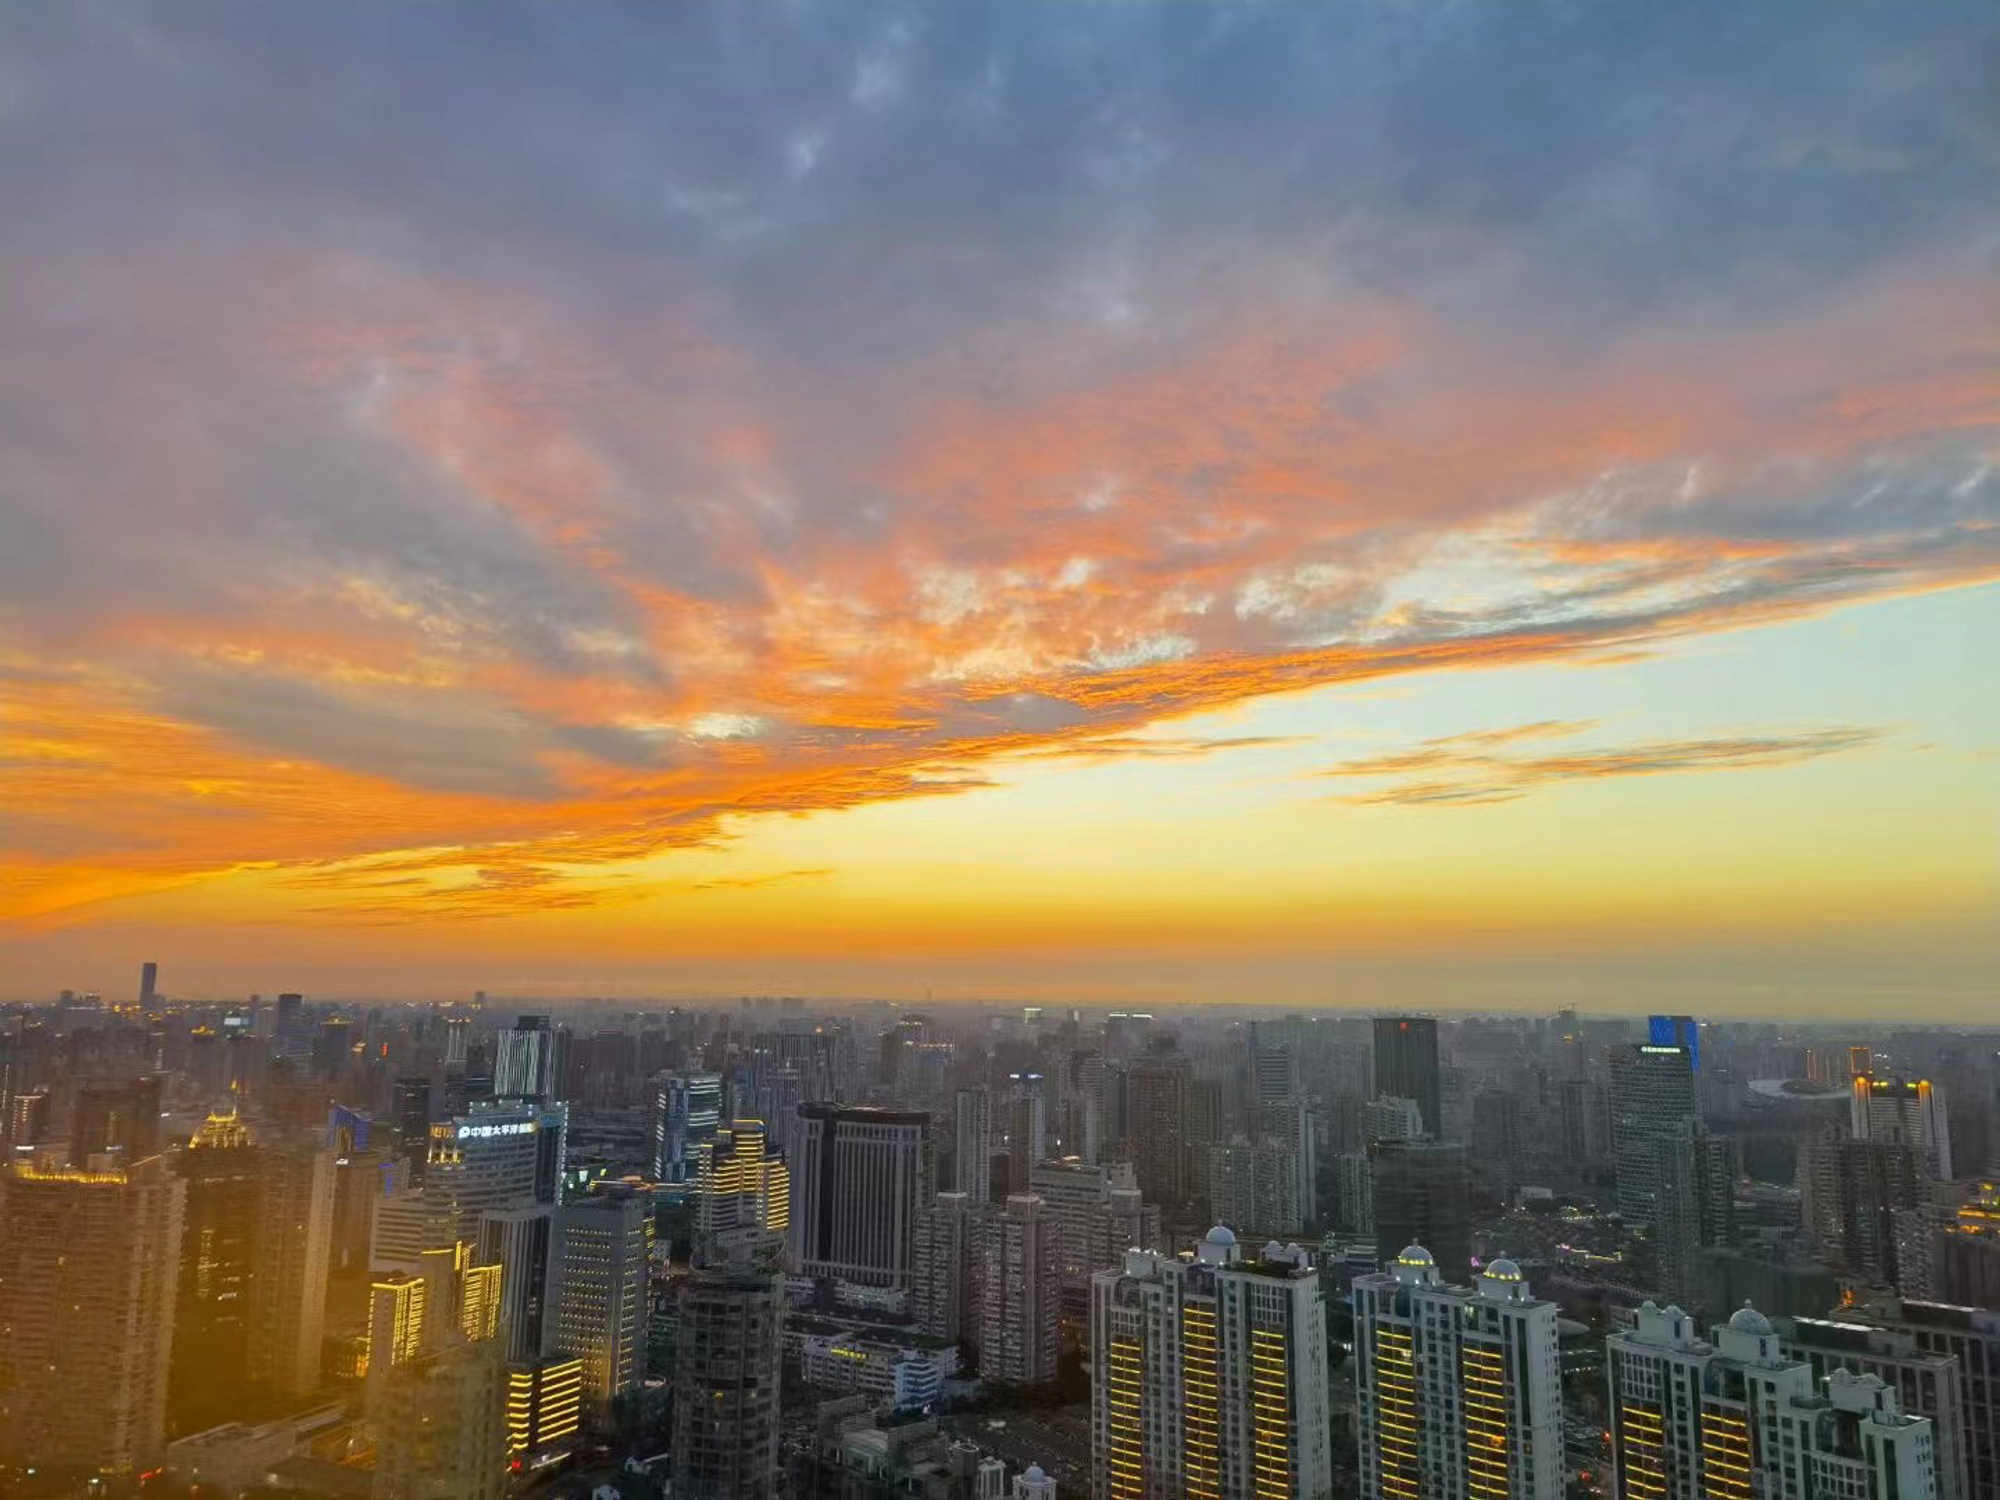 2022年6月24日 天堂的恶魔 投稿 拍摄于上海